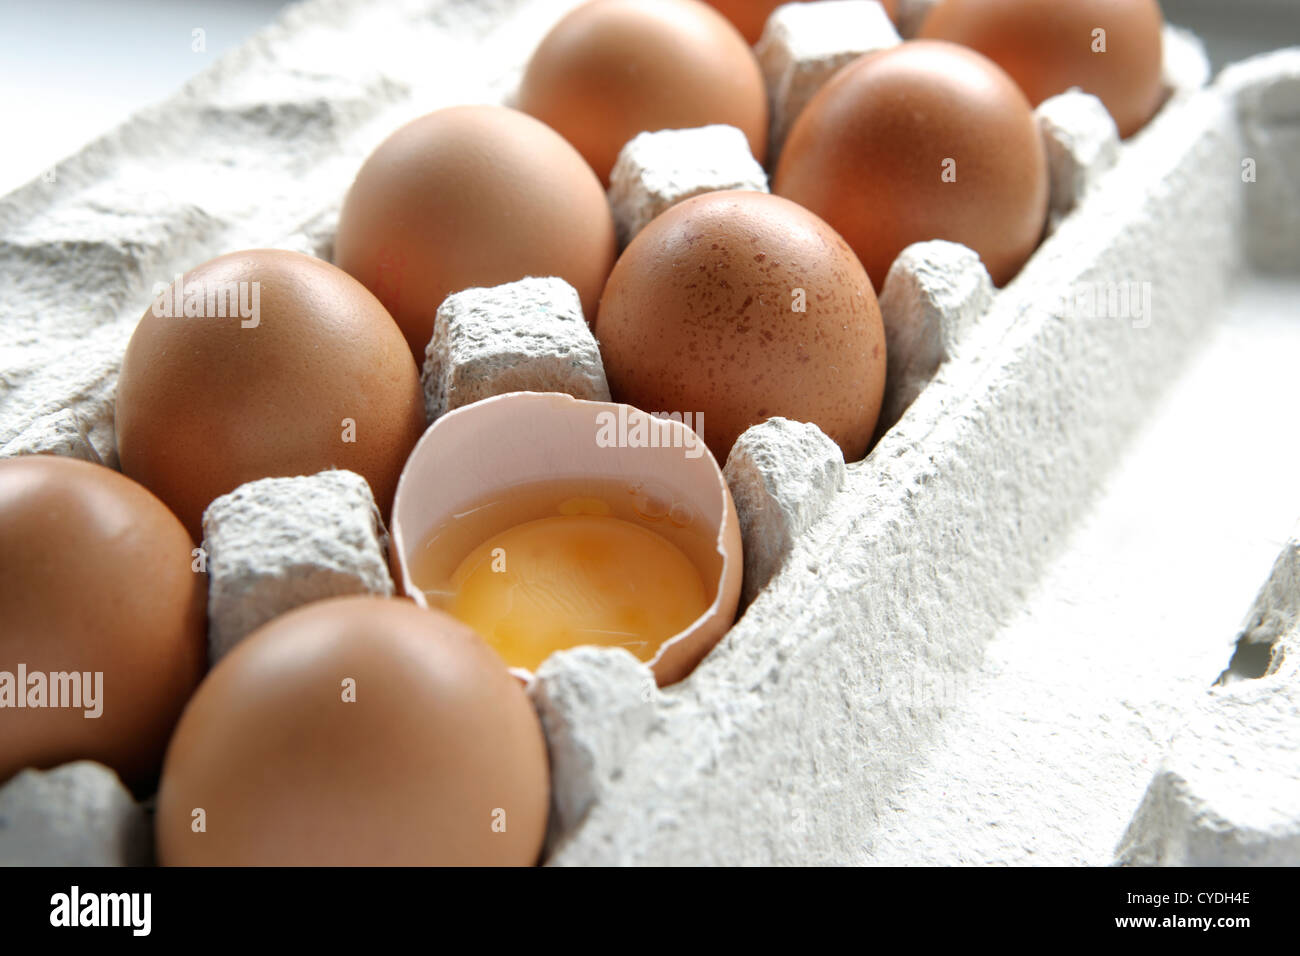 Egg carton with eggs Stock Photo